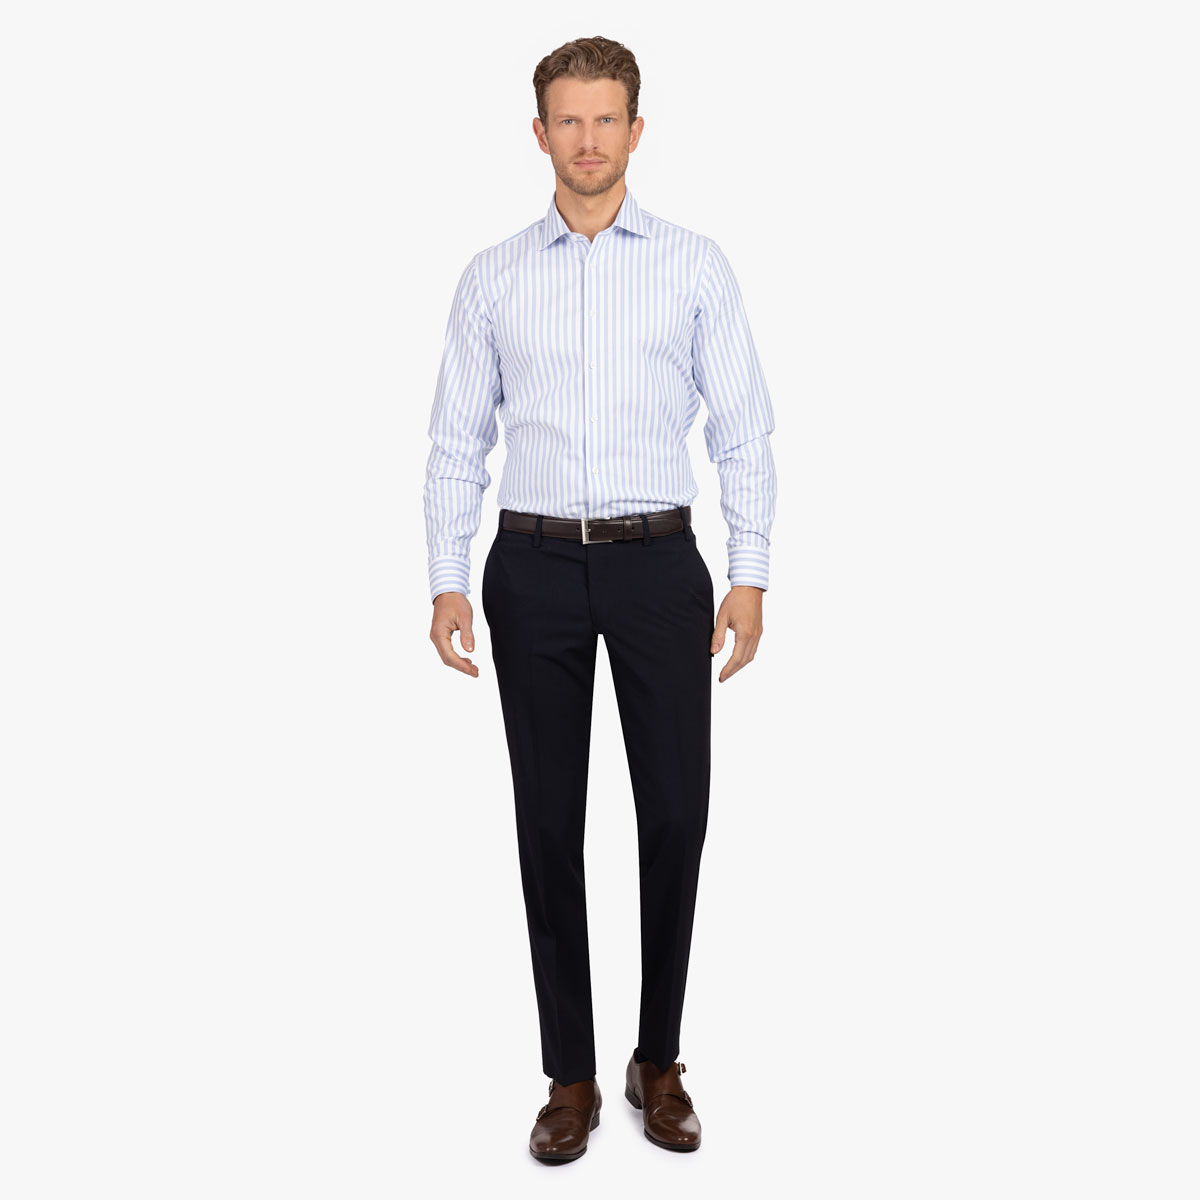 Slim Fit Hemd aus Baumwolle/Elasthan in hellblau gestreift